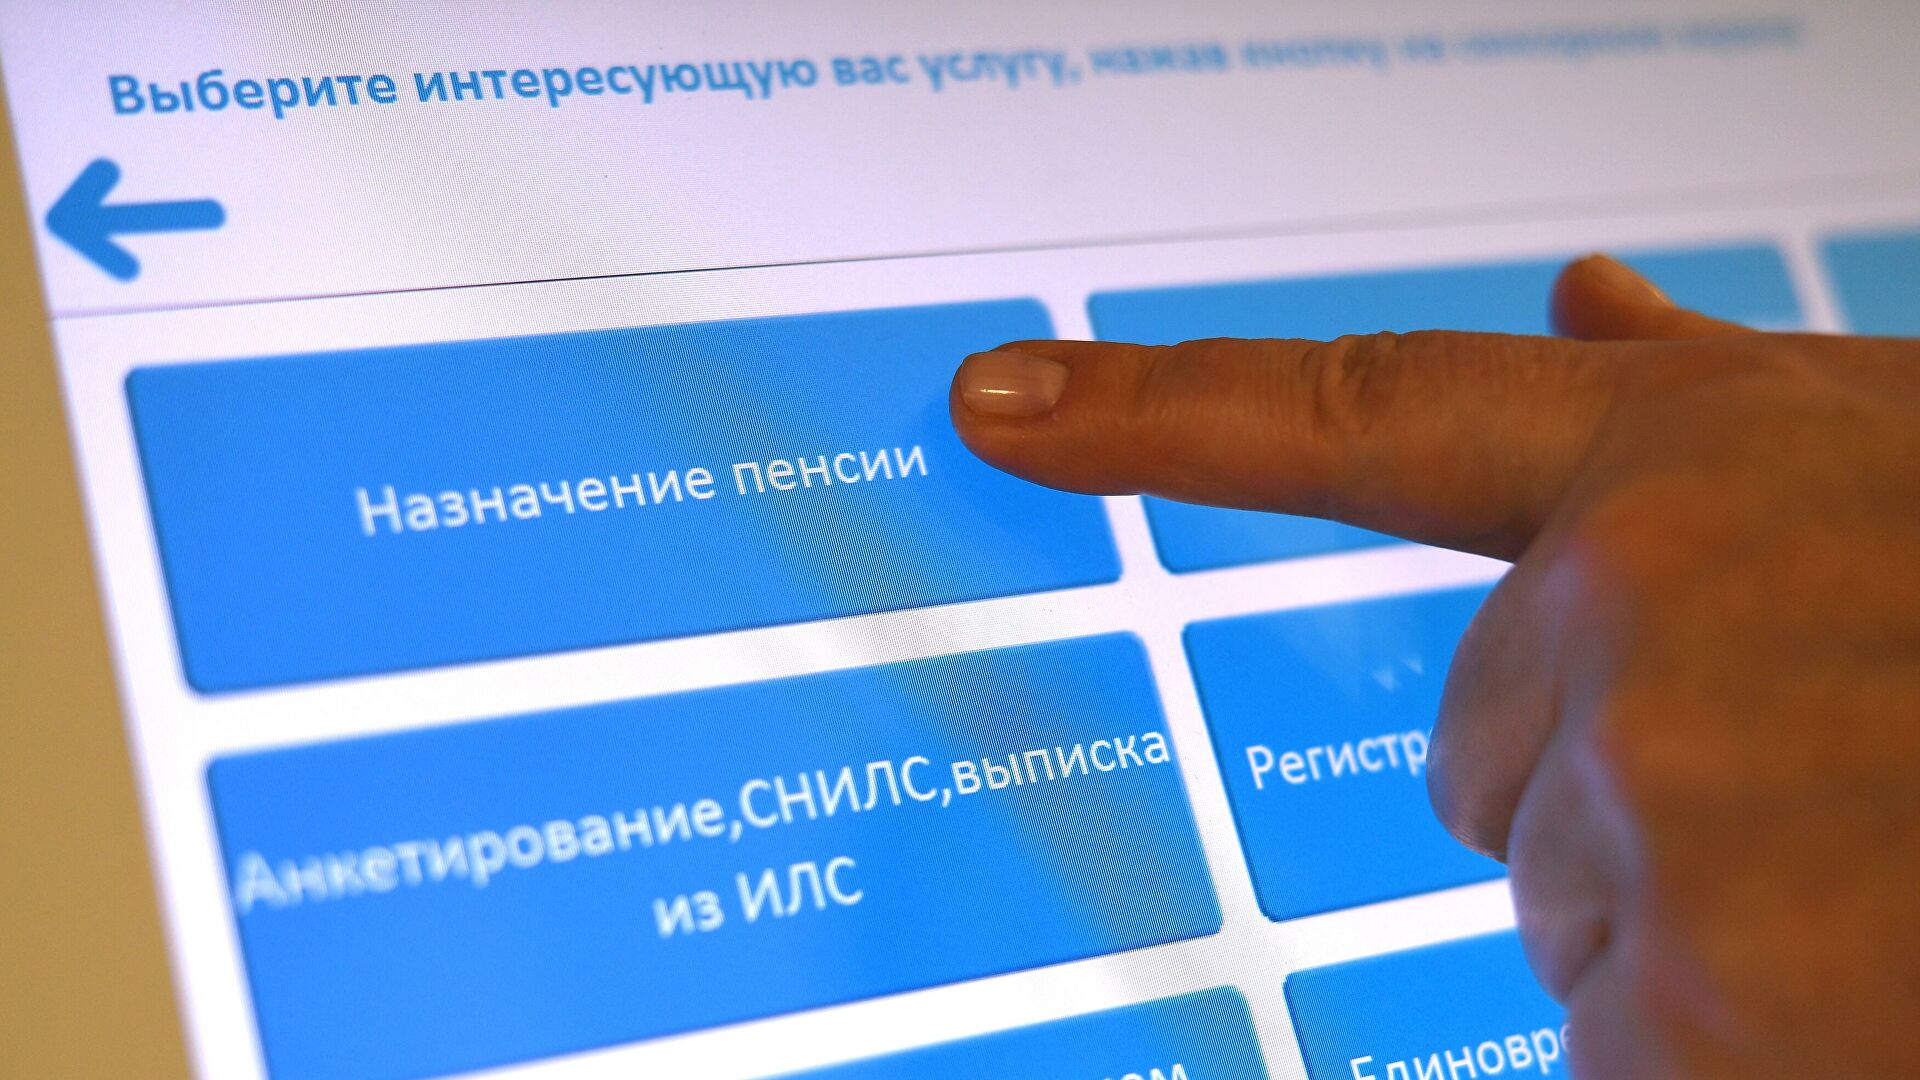 Пенсии по потере кормильца предложили назначать без подачи заявления в России